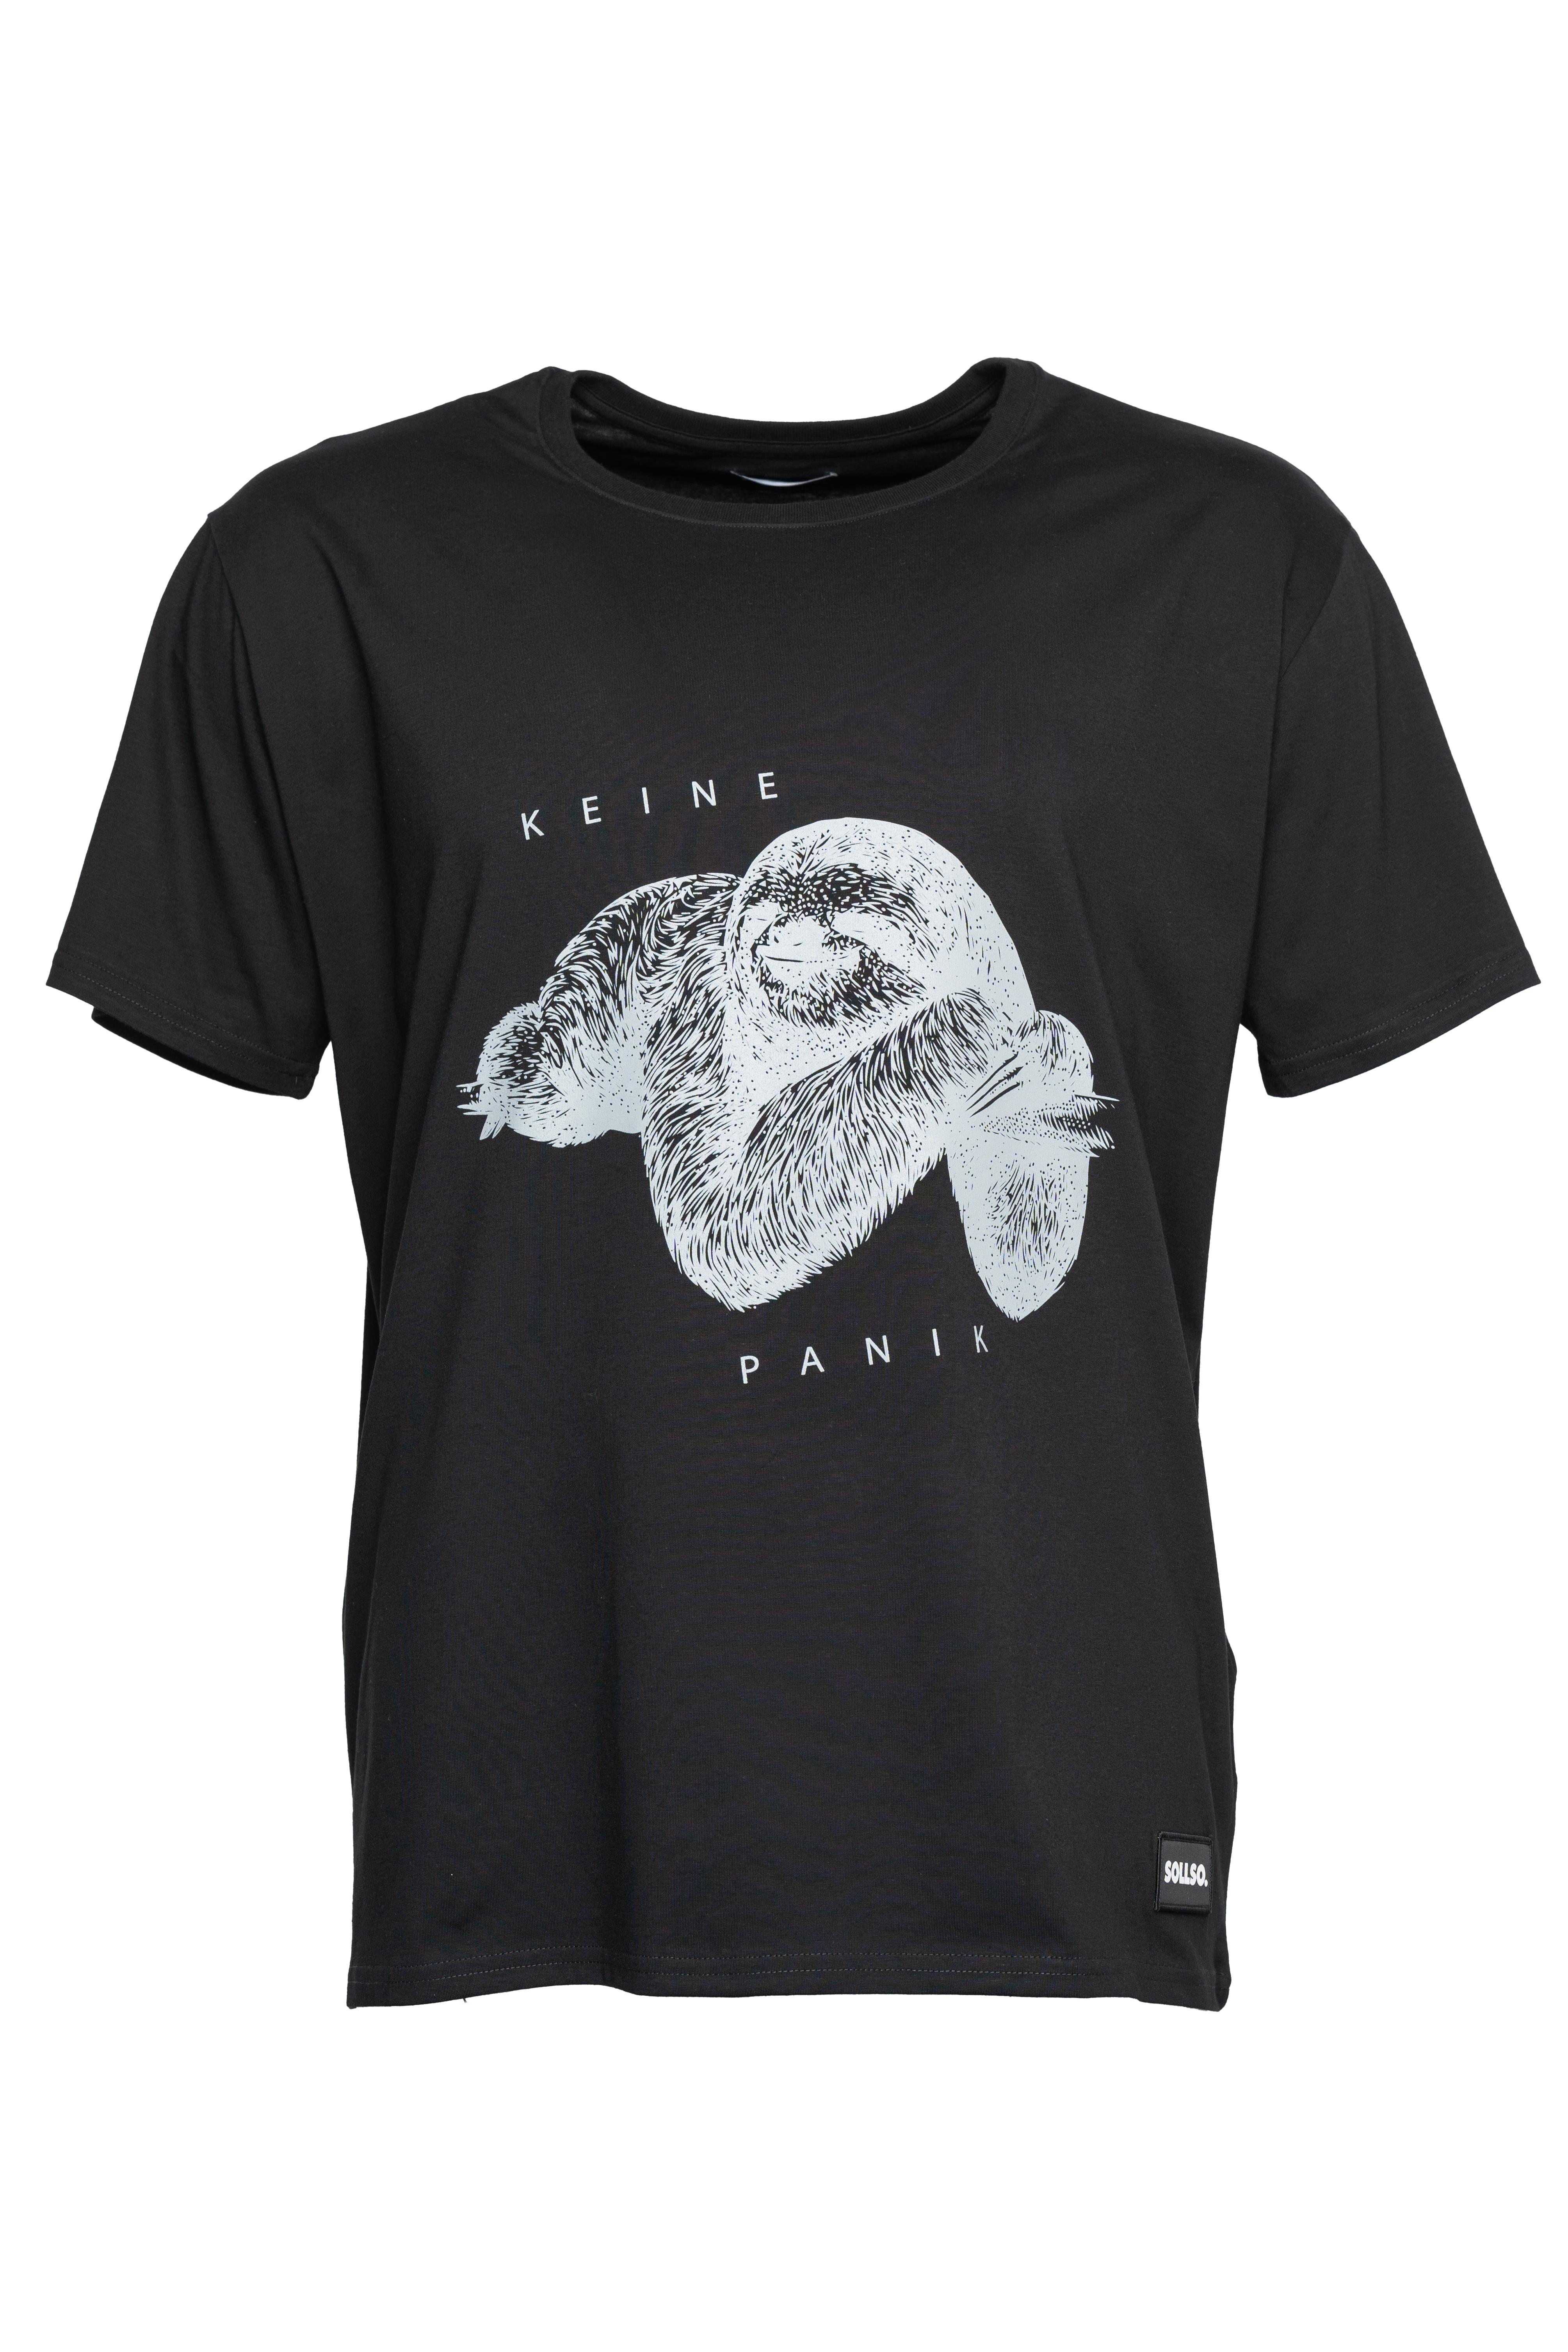 SOLLSO. T-Shirt "Keine Panik Faultier", Farbe Dark Black, Größe S